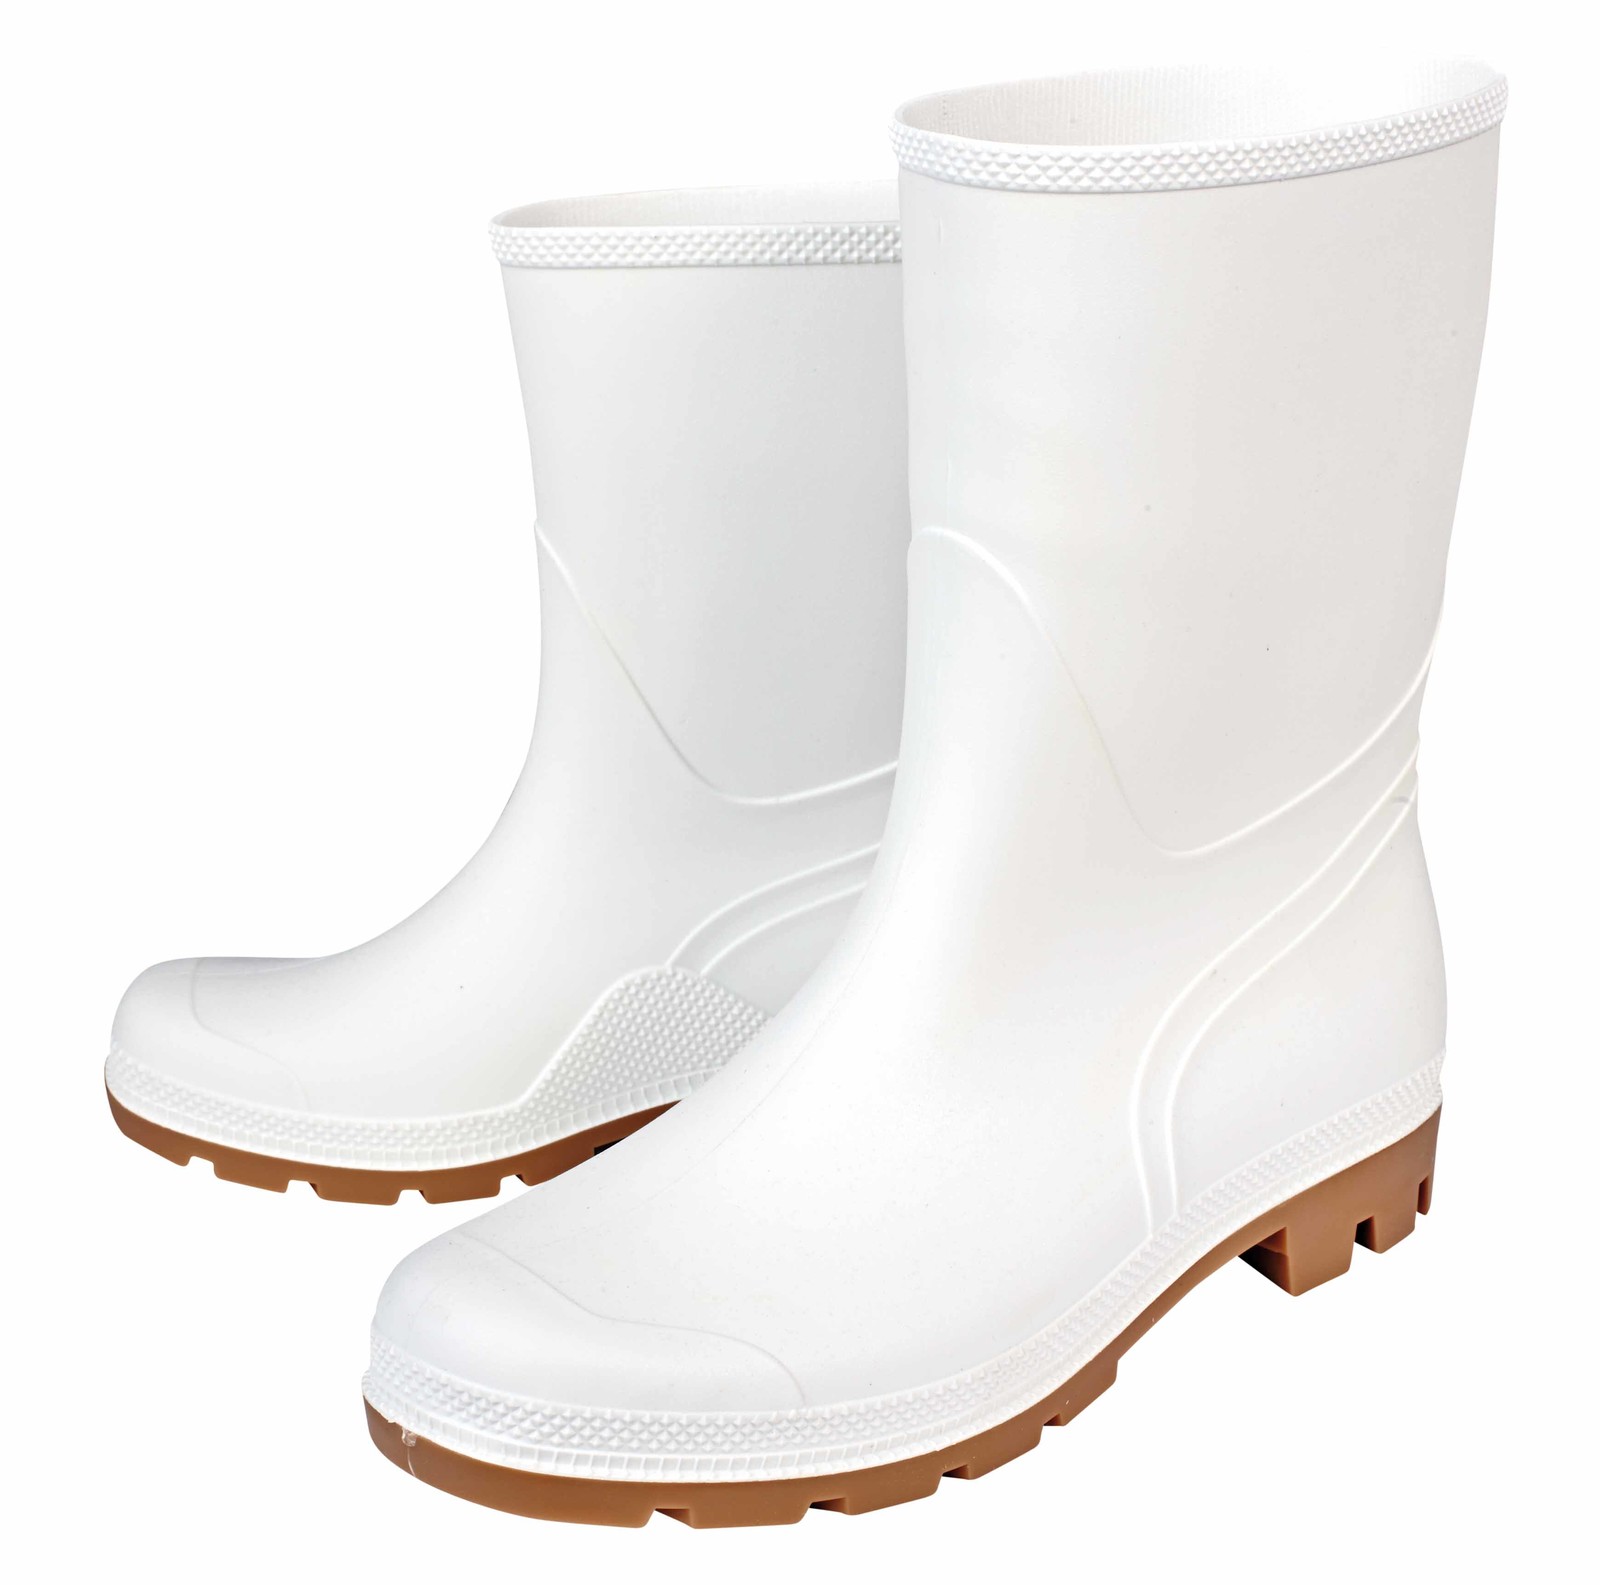 Gumáky Boots Troncheto PVC nízke - veľkosť: 42, farba: biela